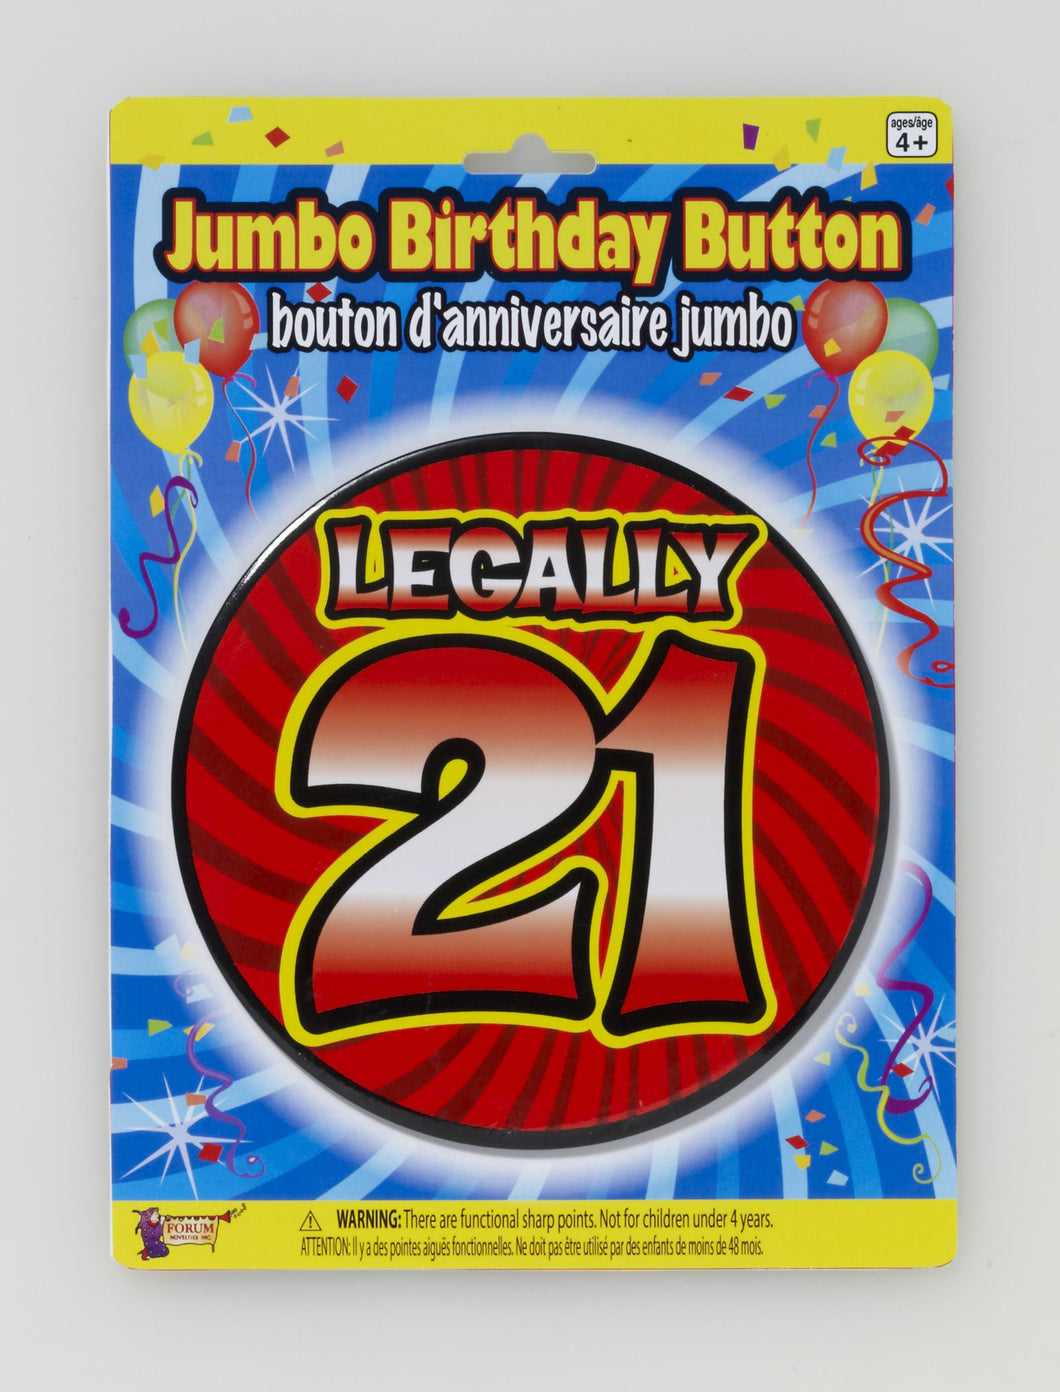 Legally 21 Jumbo Birthday Button